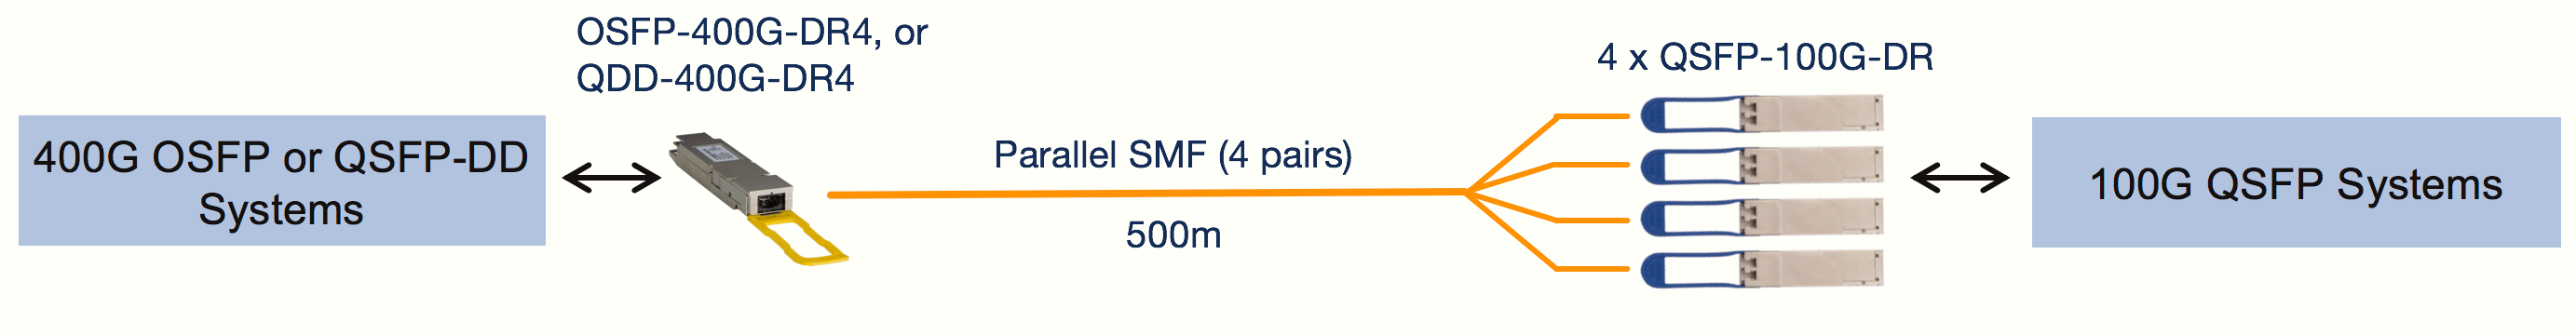 OSFP-400G-DR4 (или QDD-400G-DR4) до 4 x QSFP-100G-DR на расстоянии более 500 м SMF